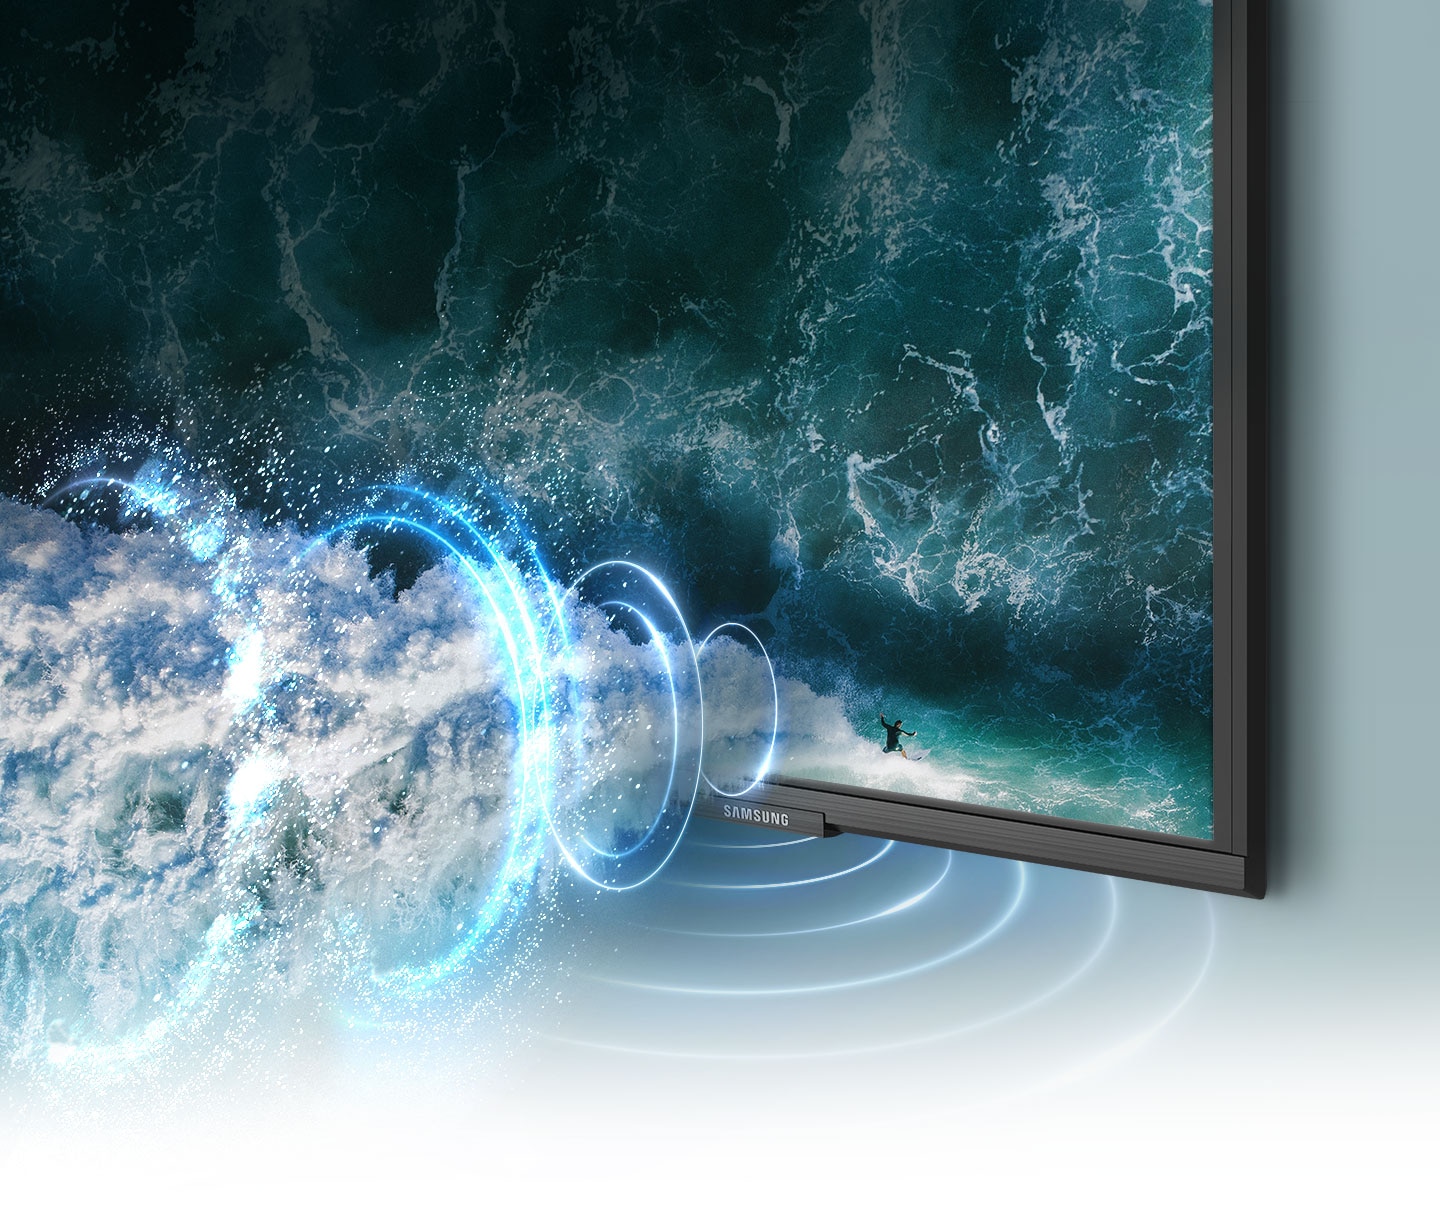 Simulirana grafika zvočnega vala prikazuje zvočno tehnologijo sledenja predmetom, ki sledi deskarju po TV zaslonu.